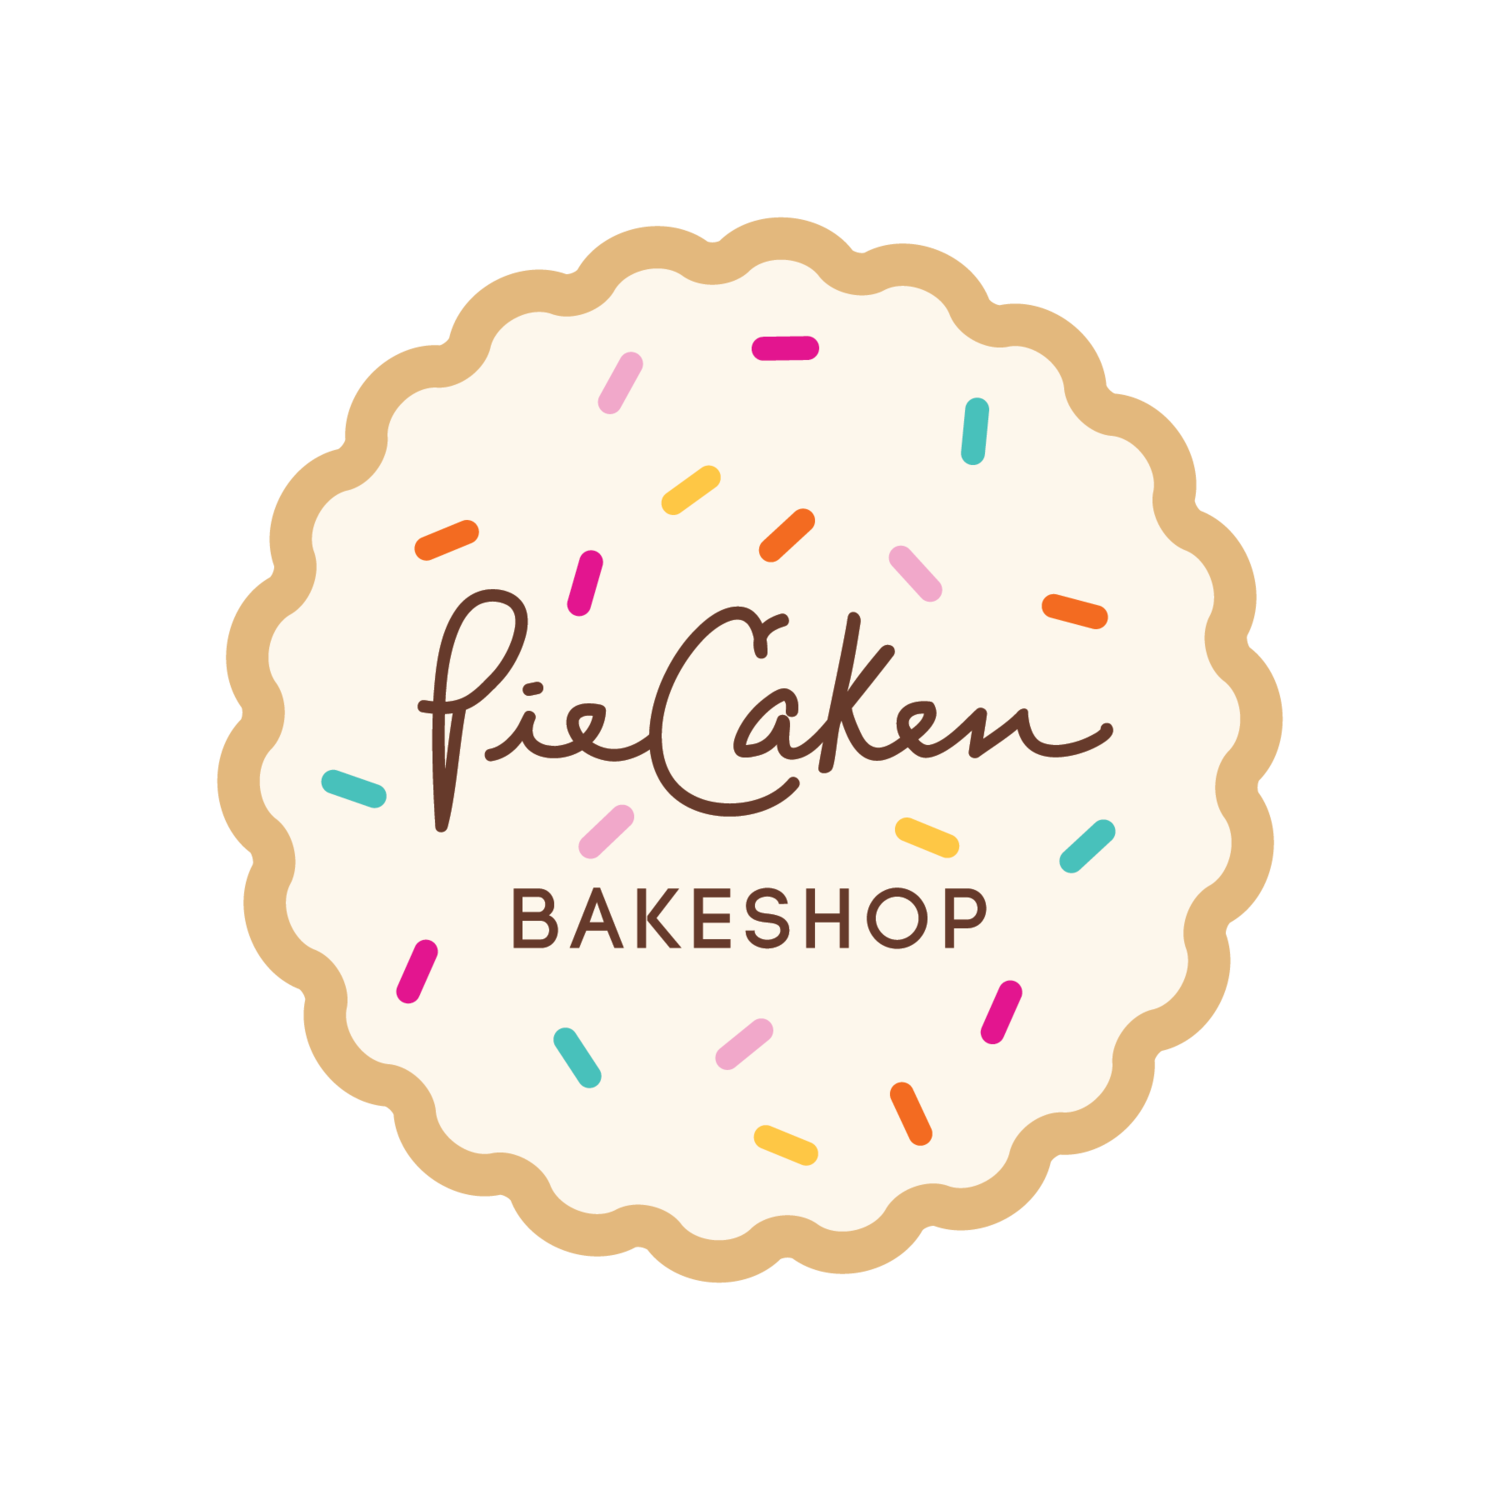 PieCaken Bakeshop